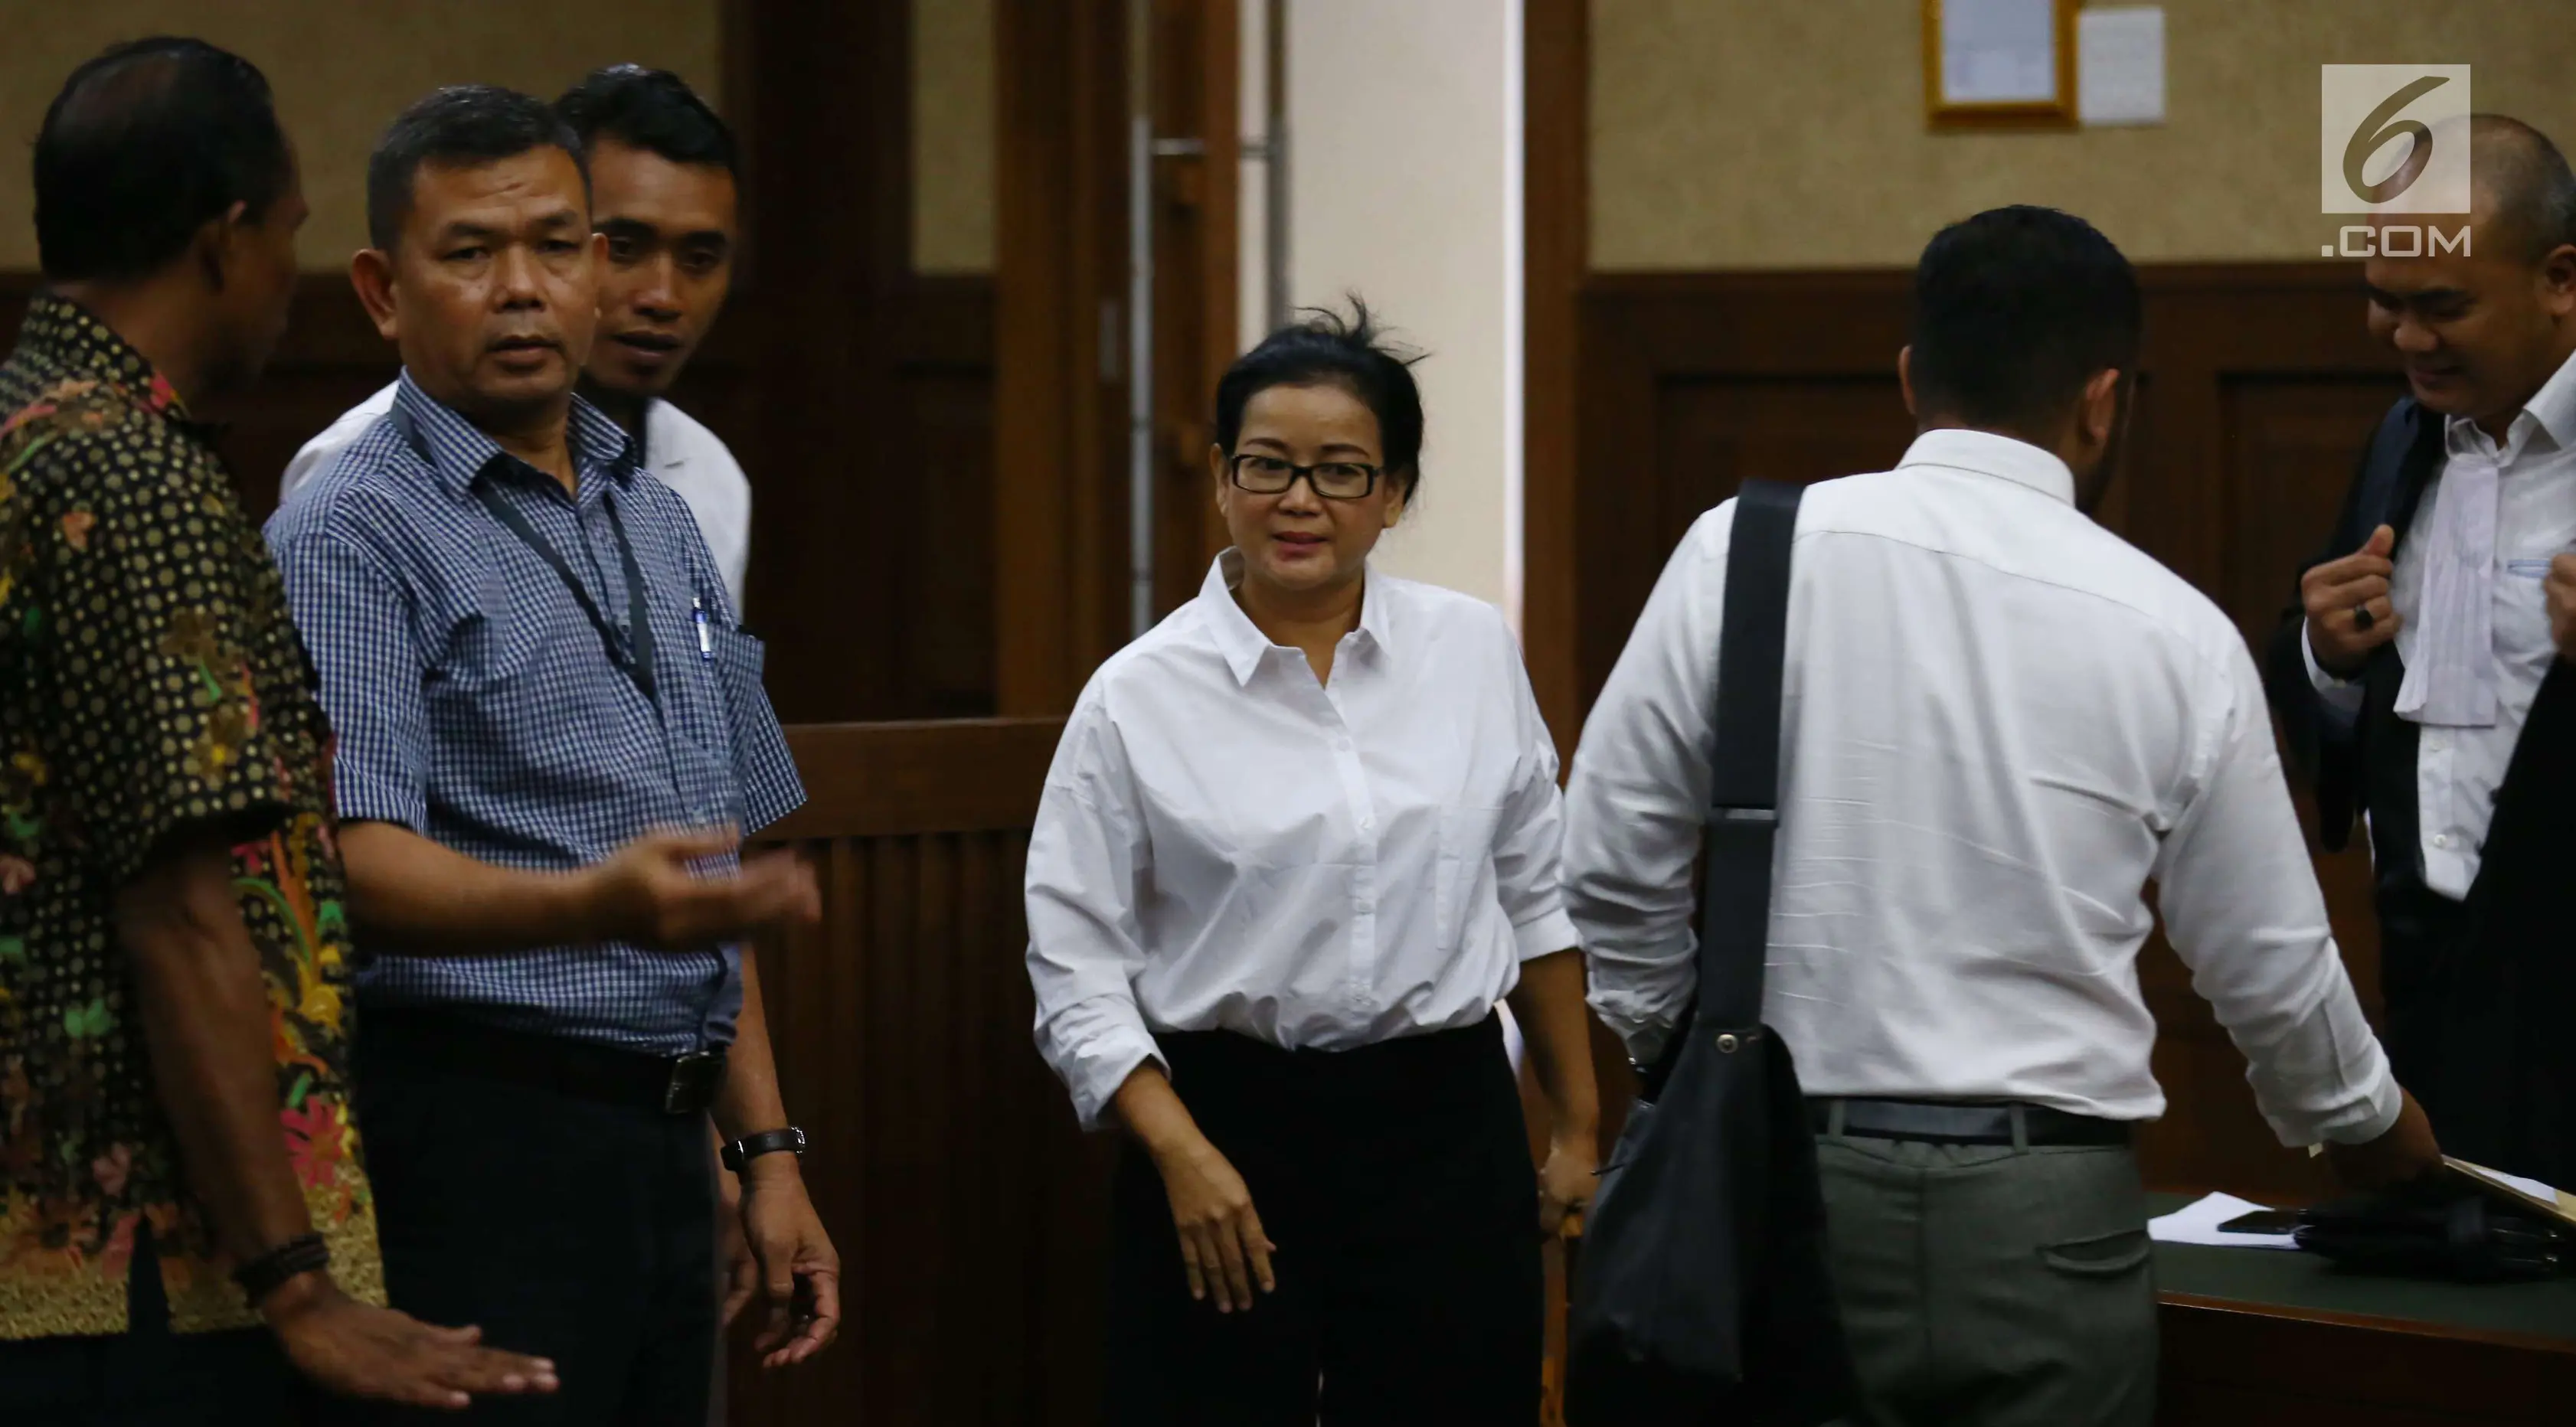 Mantan anggota Komisi II DPR Miryam S Haryani seusai sidang perdana di Pengadilan Tipikor Jakarta, Kamis (13/7). Sidang kasus dugaan pemberian keterangan palsu dalam kasus e-KTP itu beragenda pembacaan dakwaan dari JPU. (Liputan6.com/Helmi Afandi)